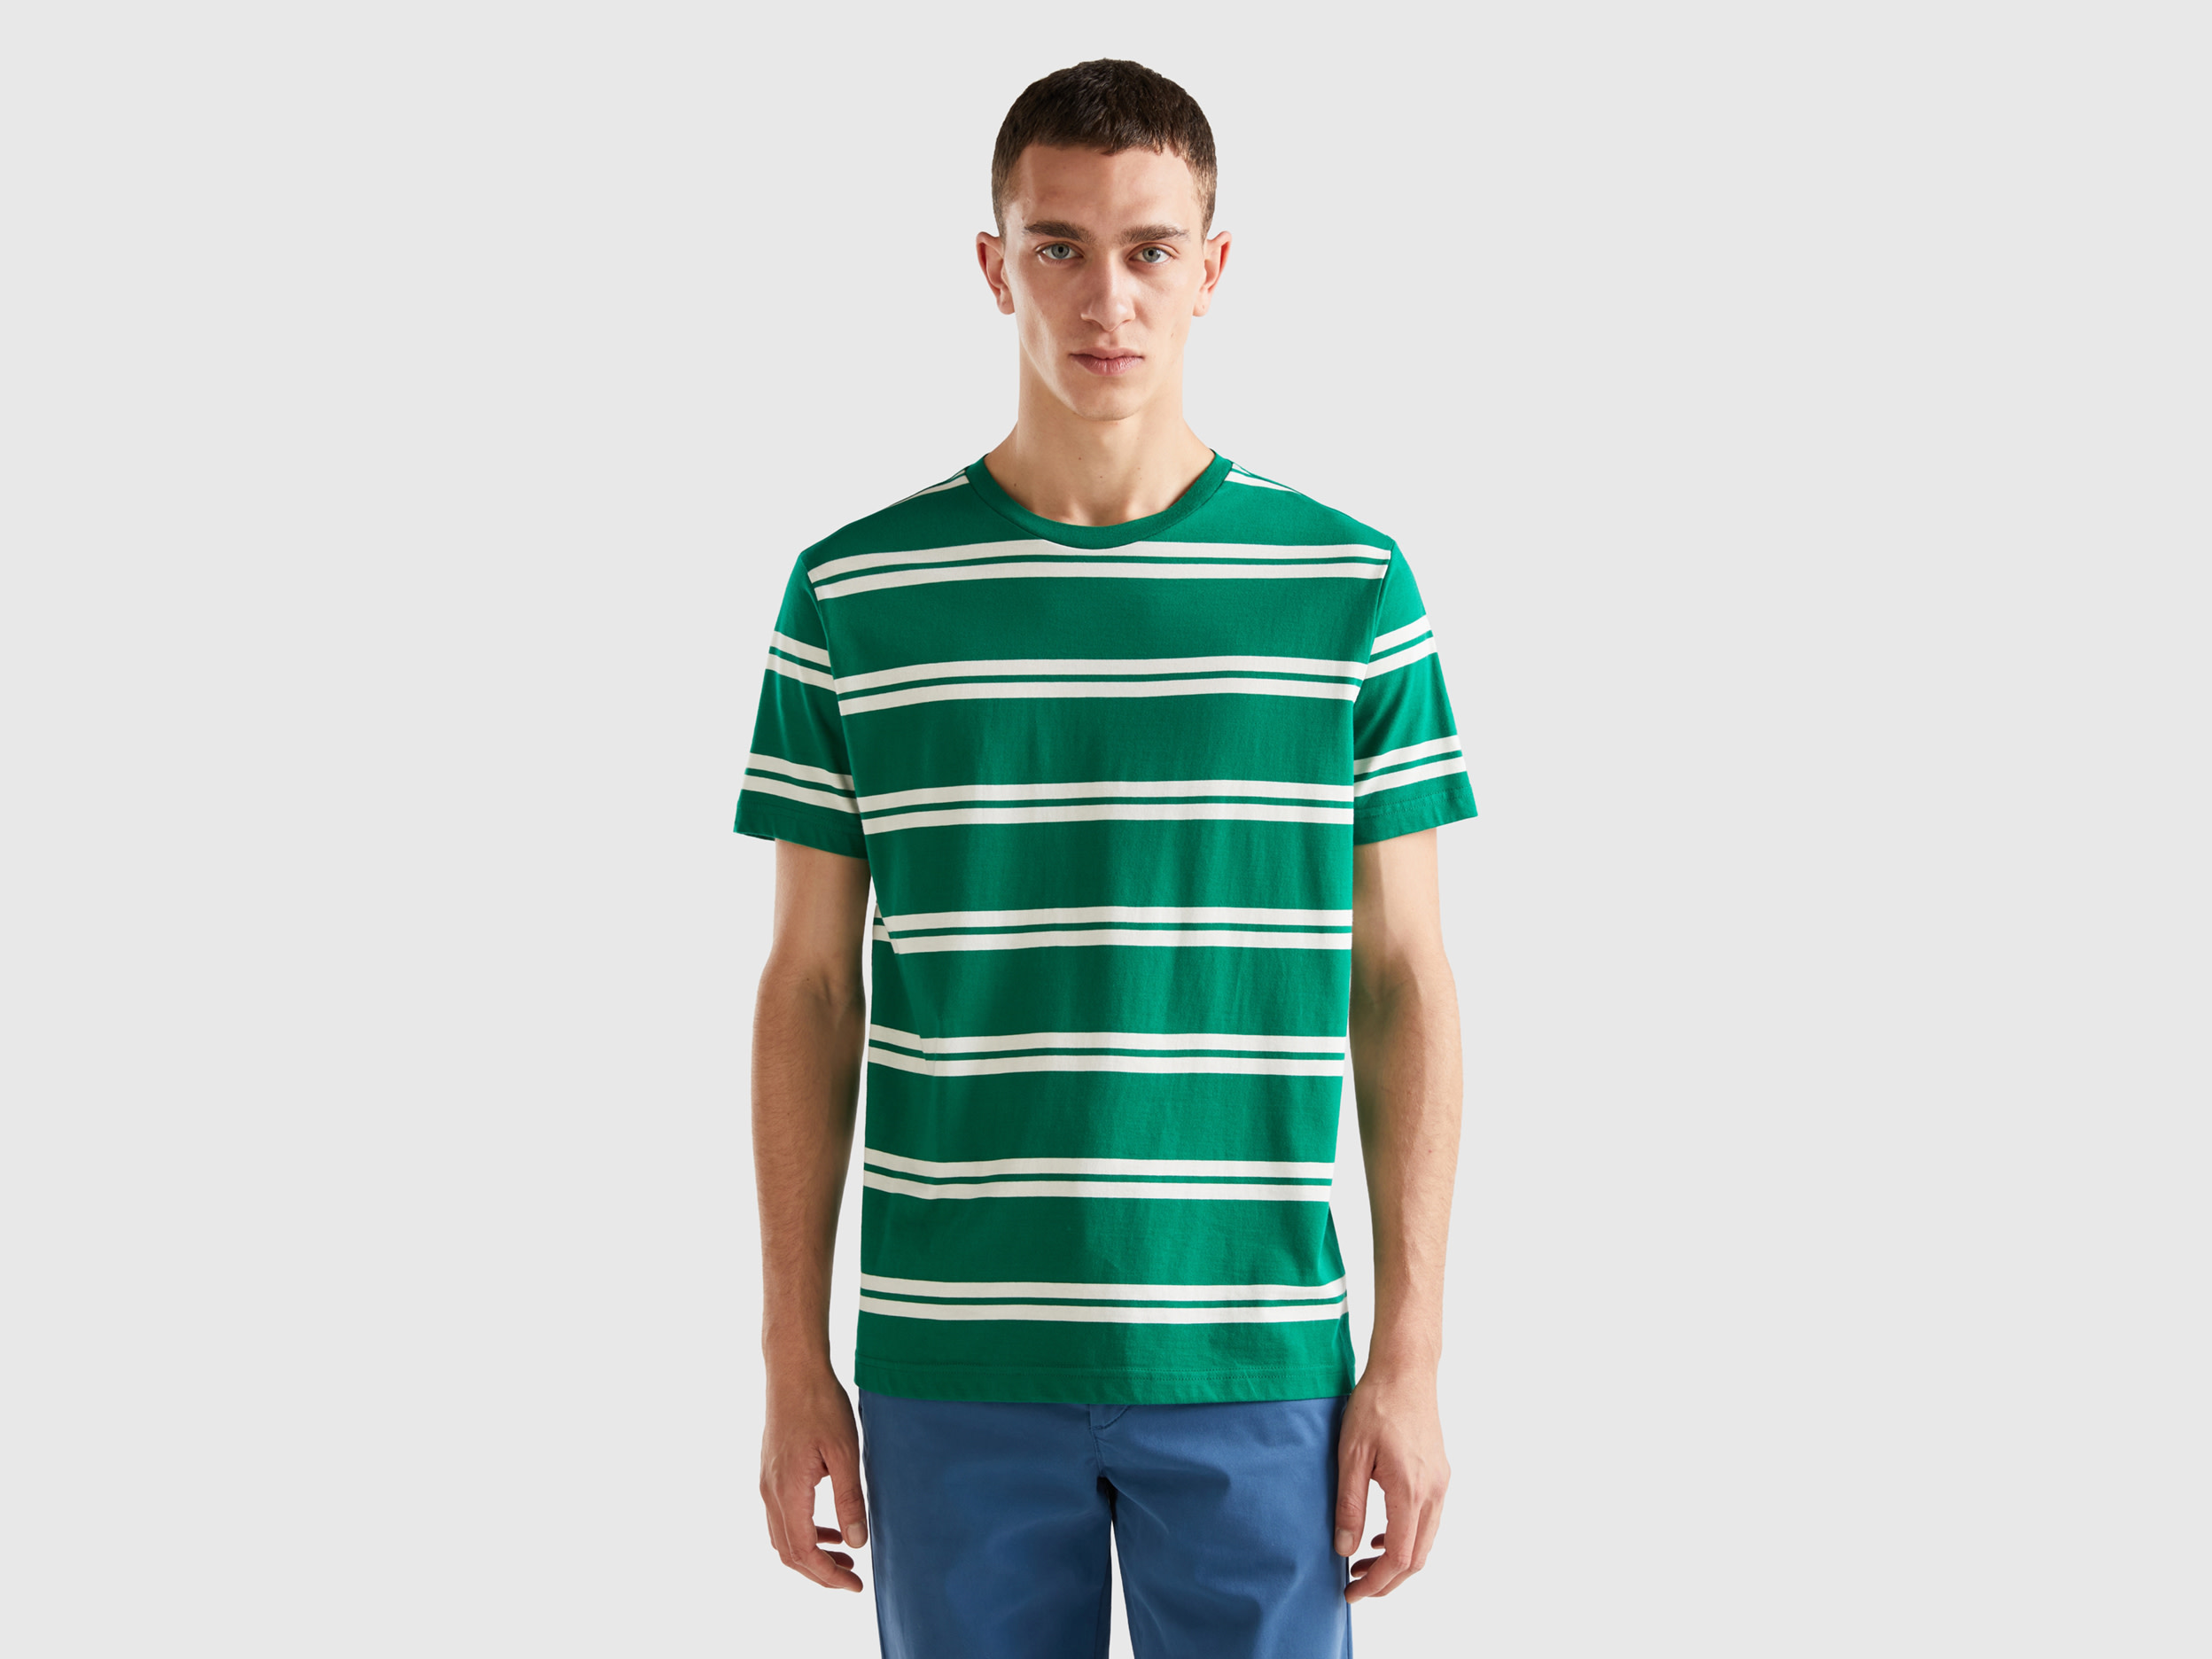 Benetton, Striped Short Sleeve T-shirt, size XXXL, Green, Men